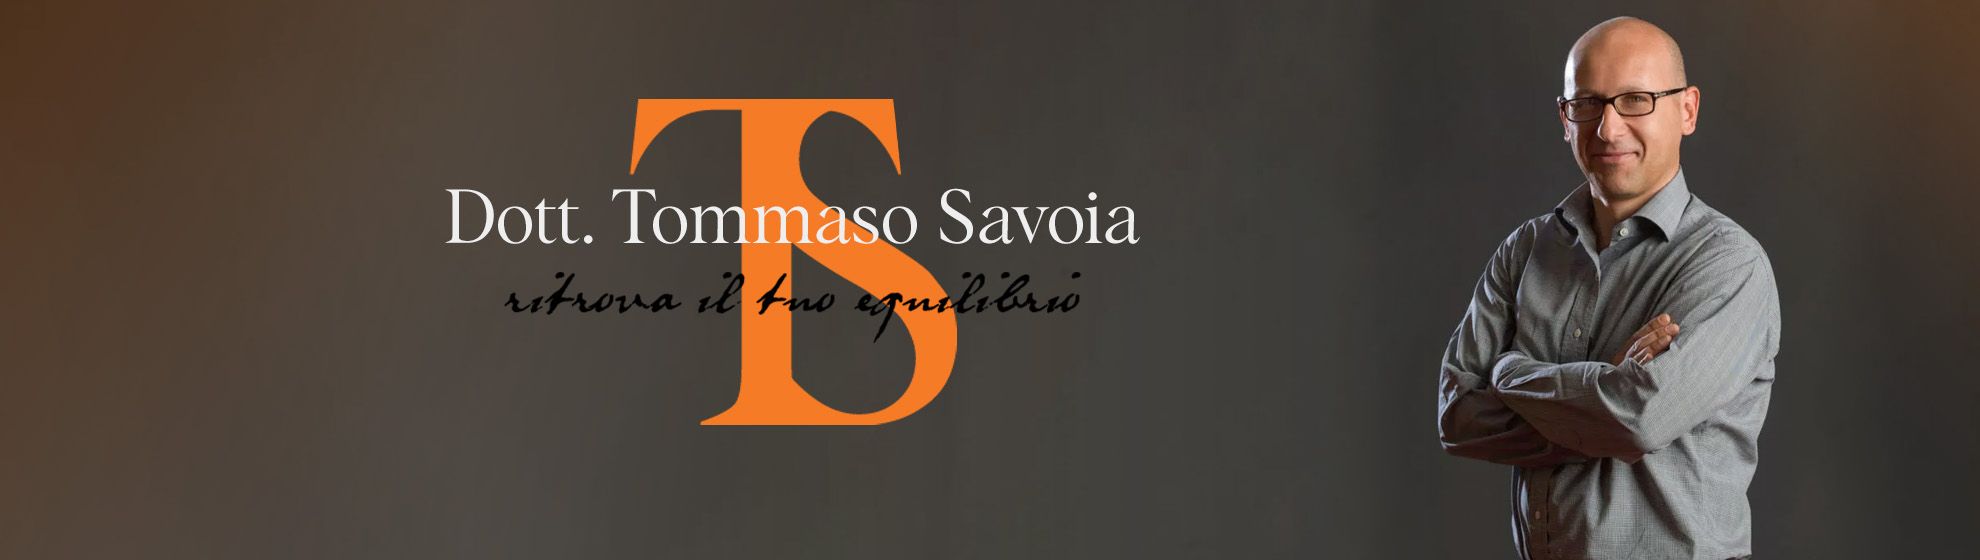 Dott. Tommaso Savoia